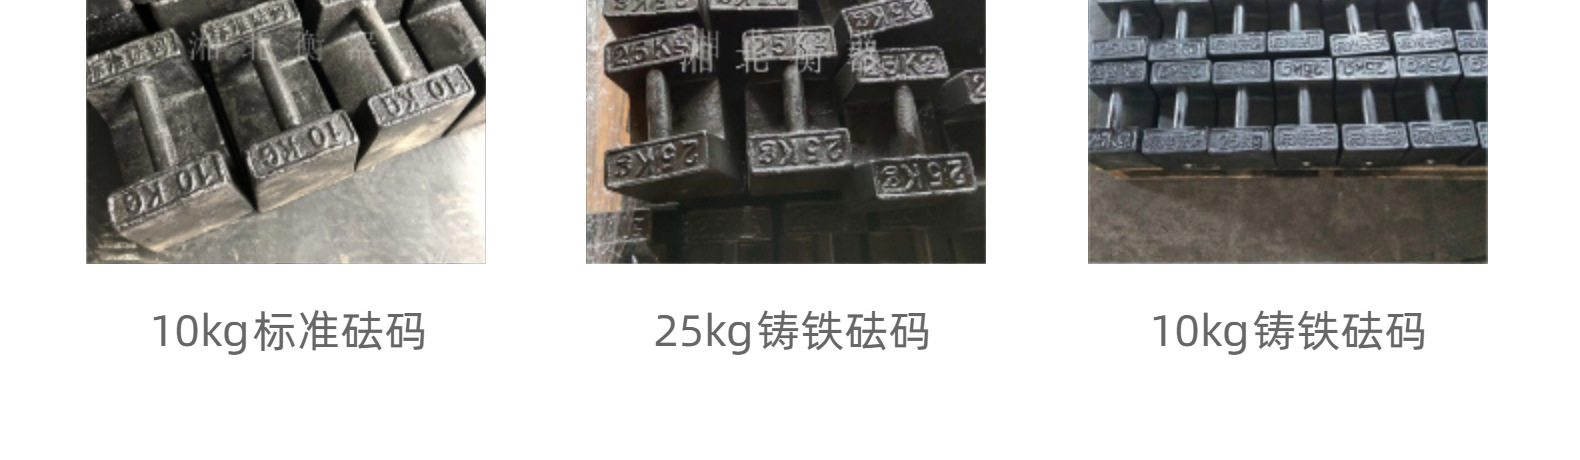 电梯检验配重砝码 20kg锁型标准砝码 25kg地磅校准铸铁砝码